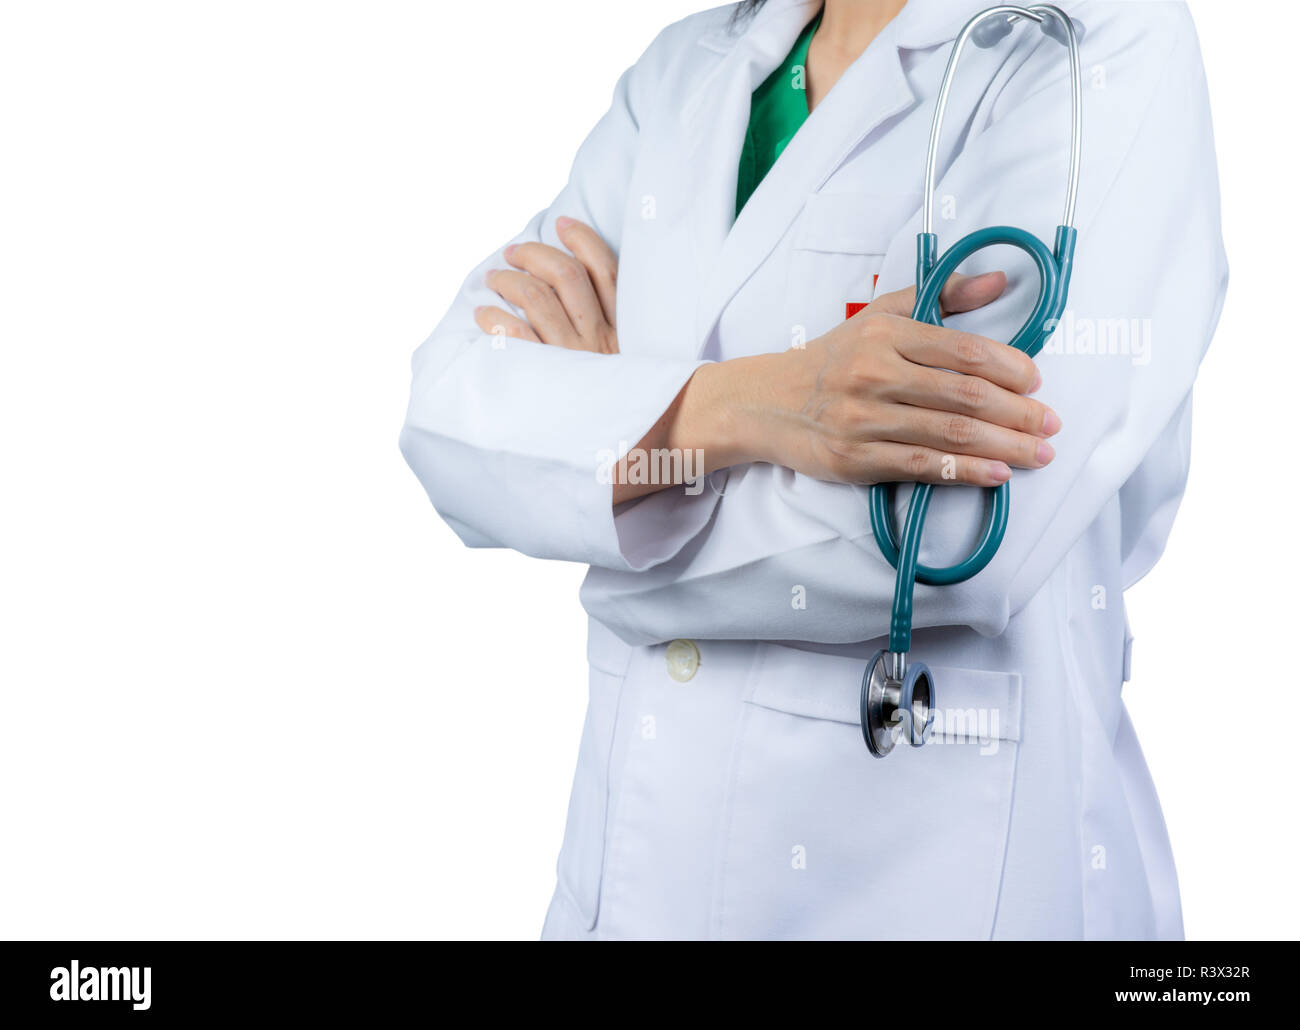 Kardiologe Facharzt tragen weiße Uniform. Arzt stand mit verschränkten Armen und Hand Stethoskop. Healthcare Professional. Asiatische doct Stockfoto